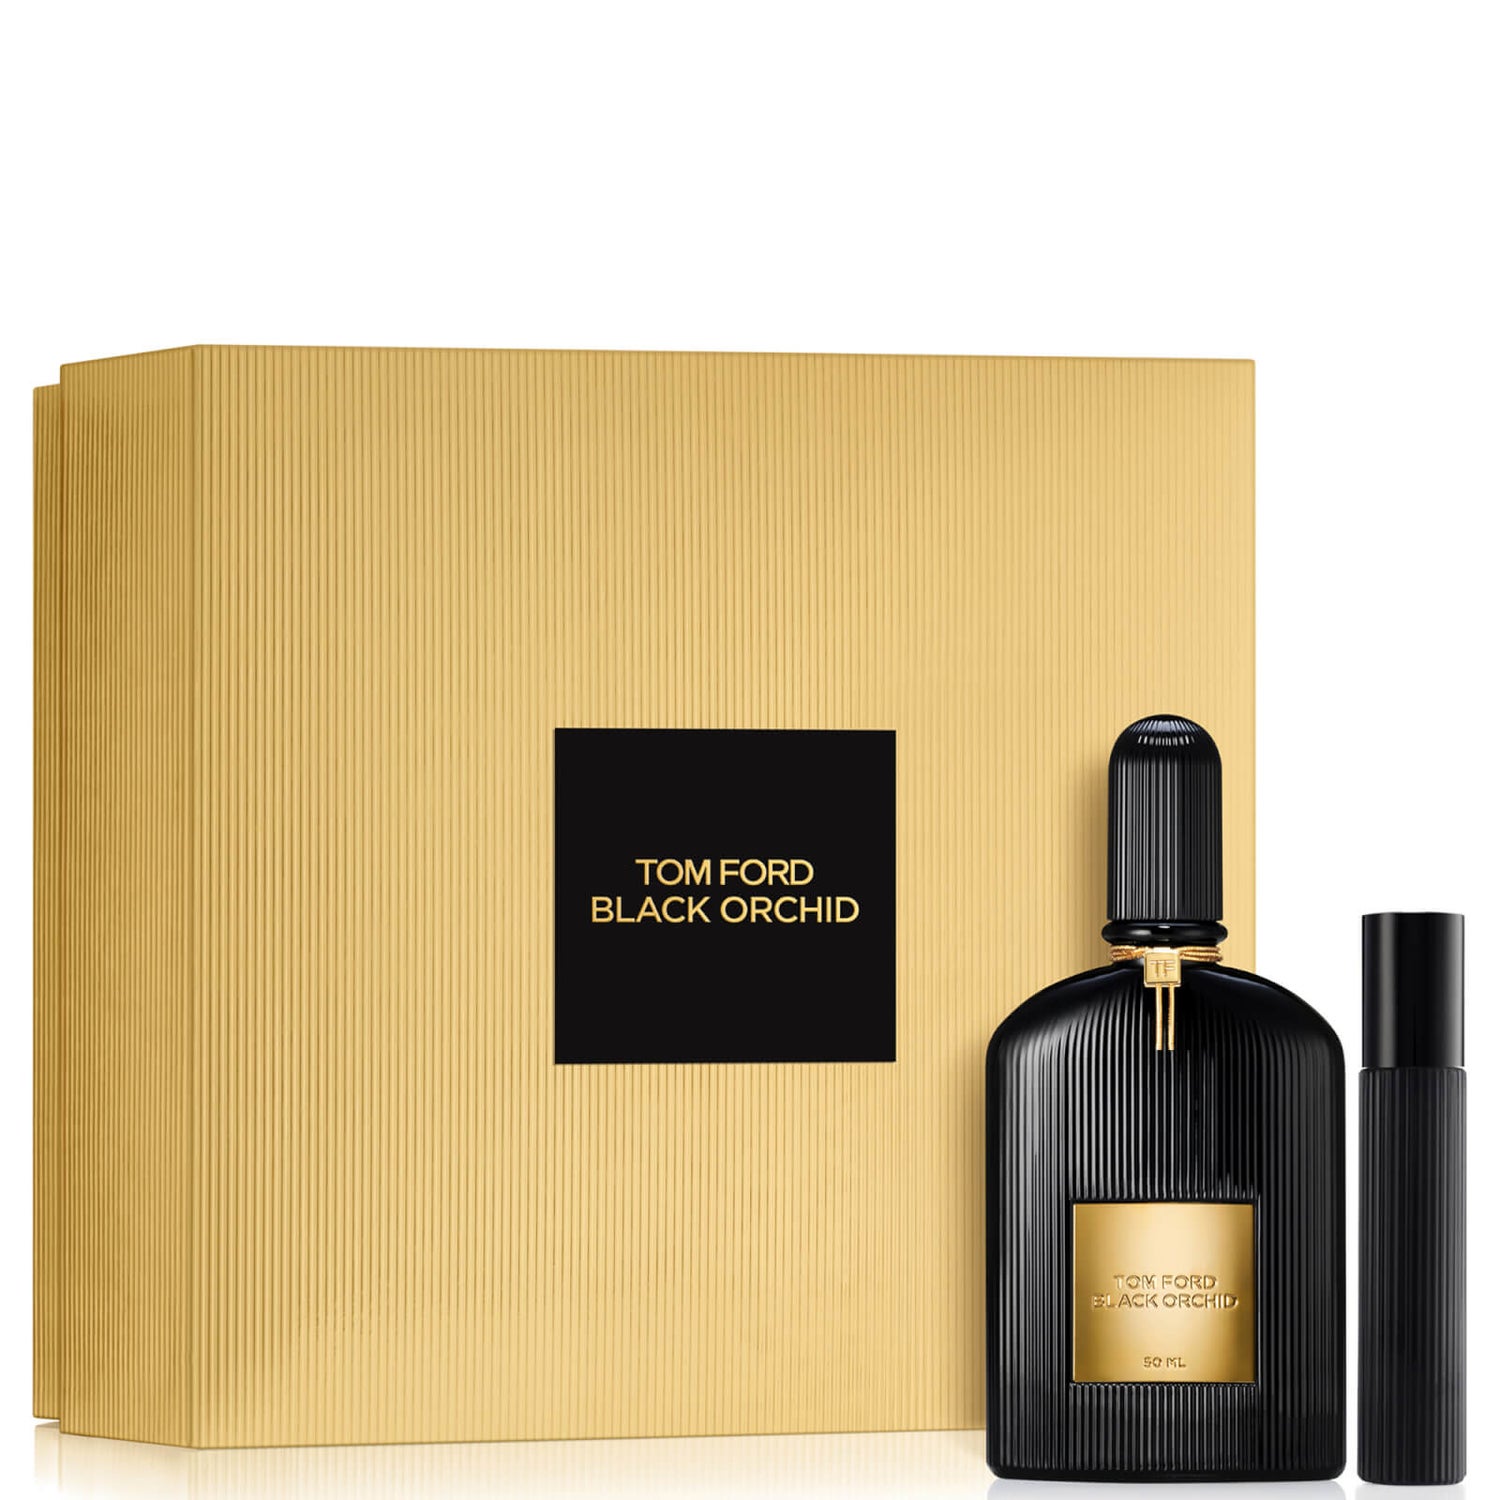 Tom Ford Black Orchid Eau de Parfum 50ml Set - LOOKFANTASTIC